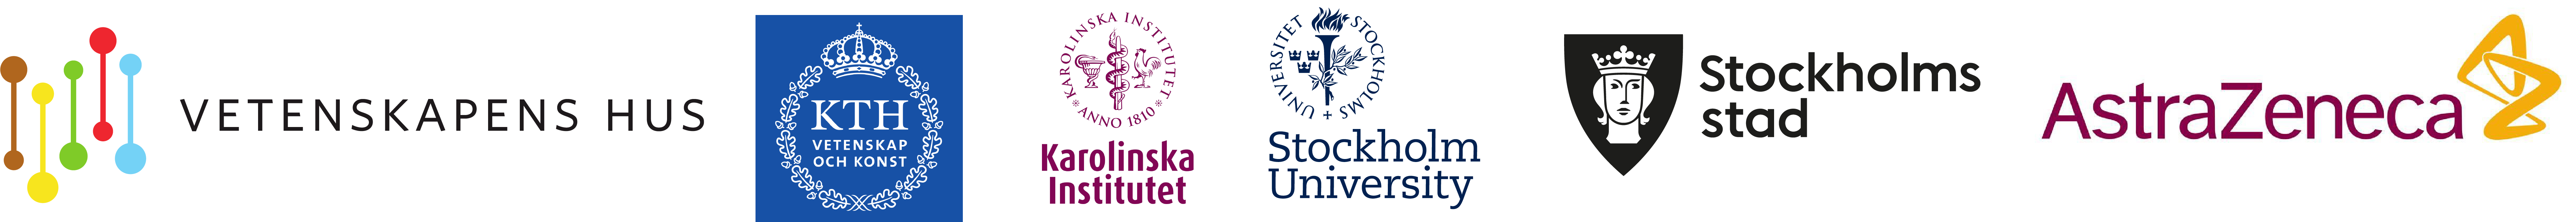 Logotyper för Vetenskapens Hus, KTH, Karolinska Institutet, Stockholms universitet, Stockholm stad, AstraZeneca